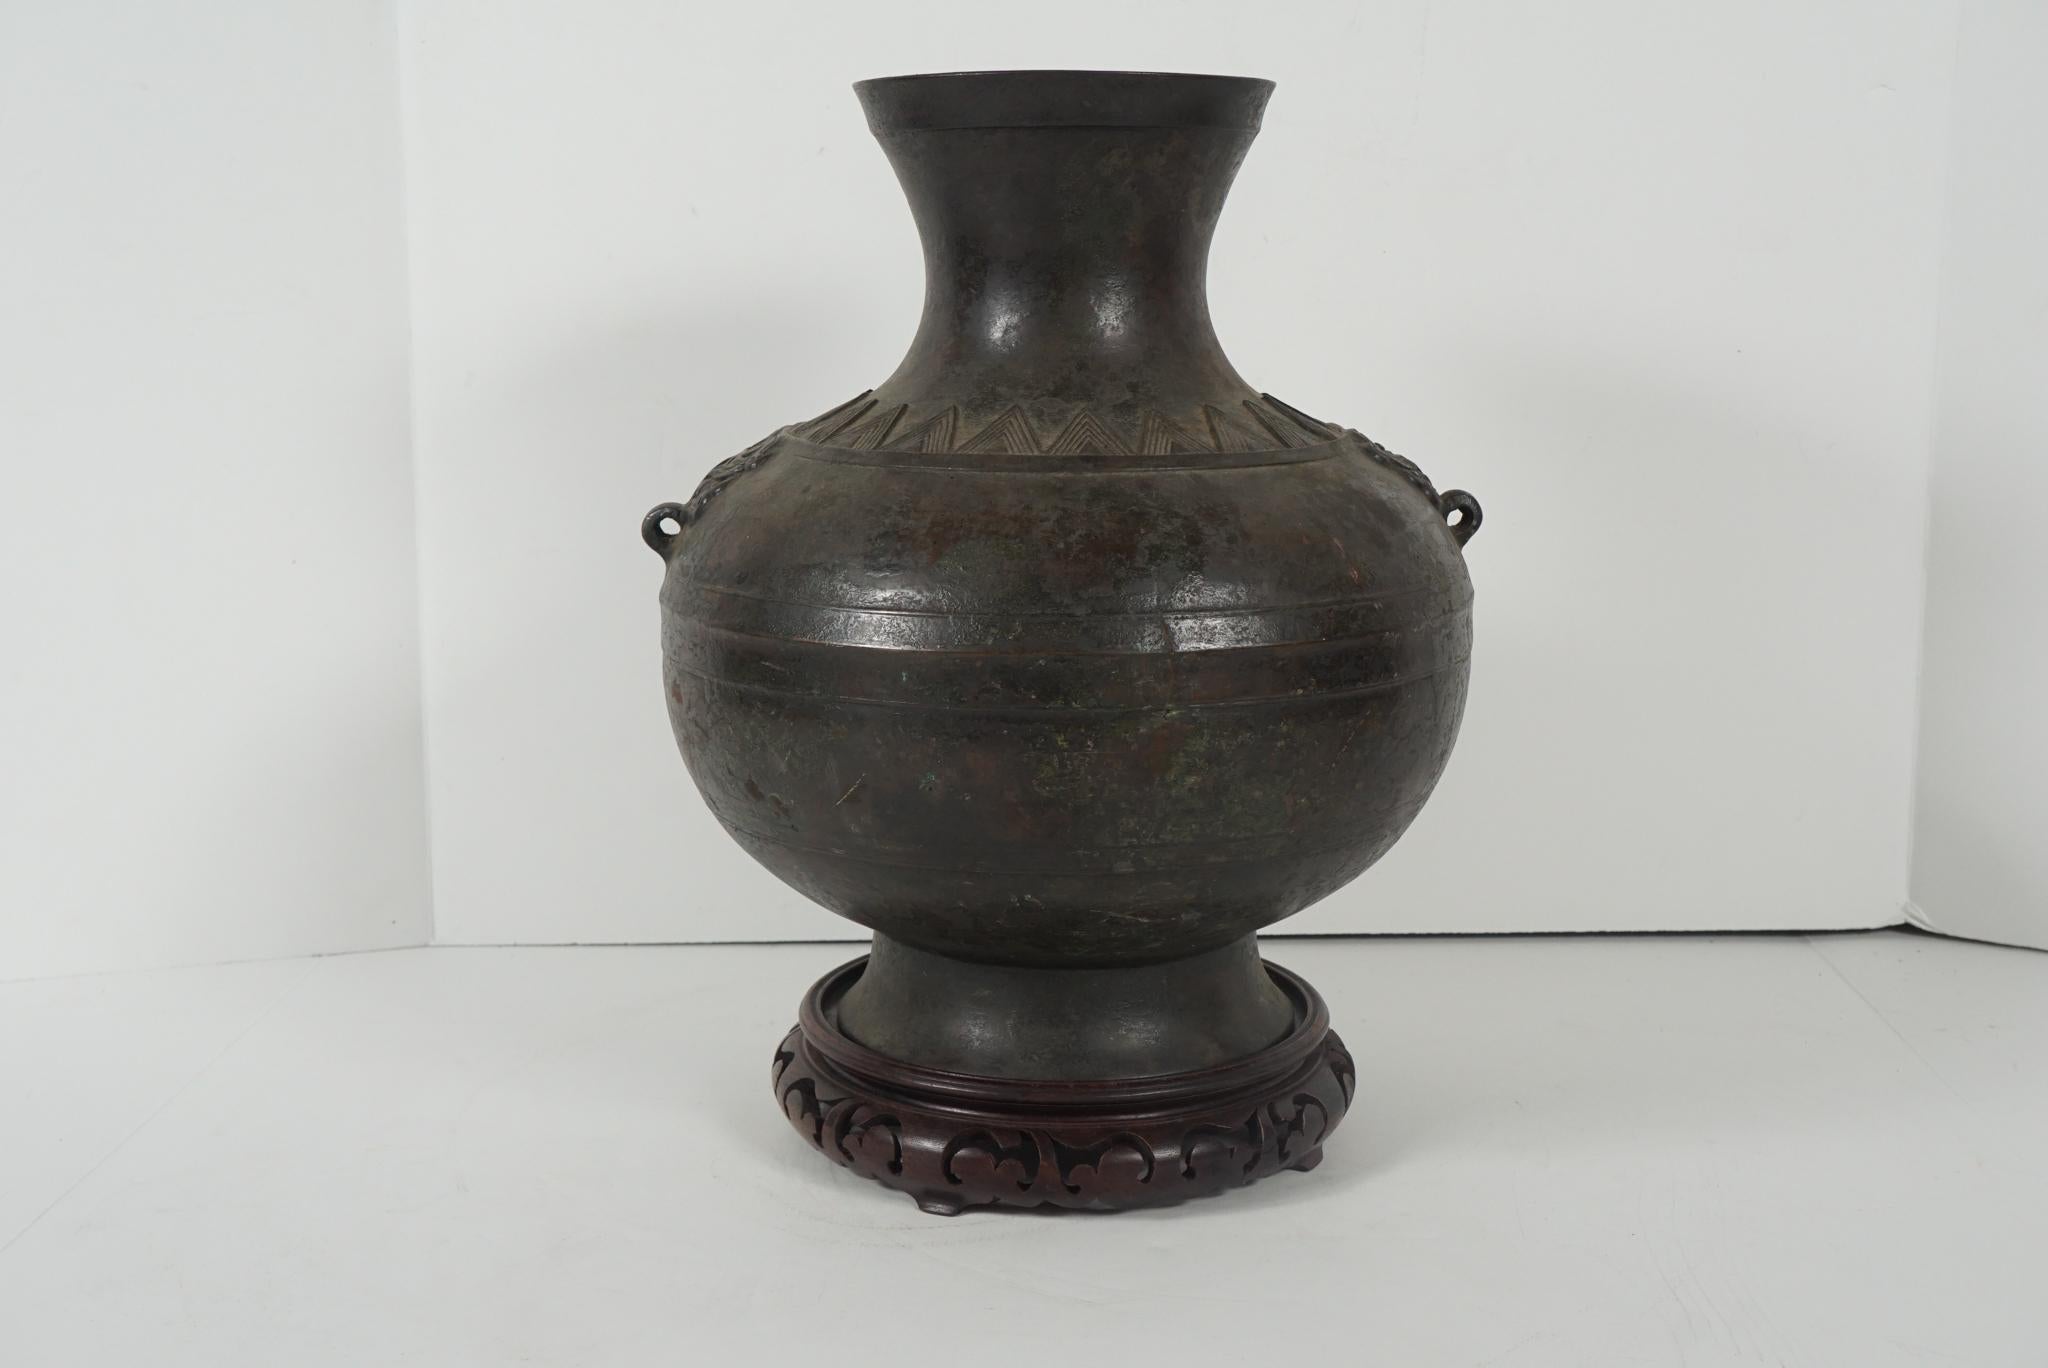 Cette belle urne ancienne, moulée comme un clin d'œil honorifique à l'ancien passé de la Chine, a été fabriquée vers 1600-1650. La forme ou Hue était une forme commune et bien représentée sous la dynastie Han dans la poterie et le bronze. Cette urne